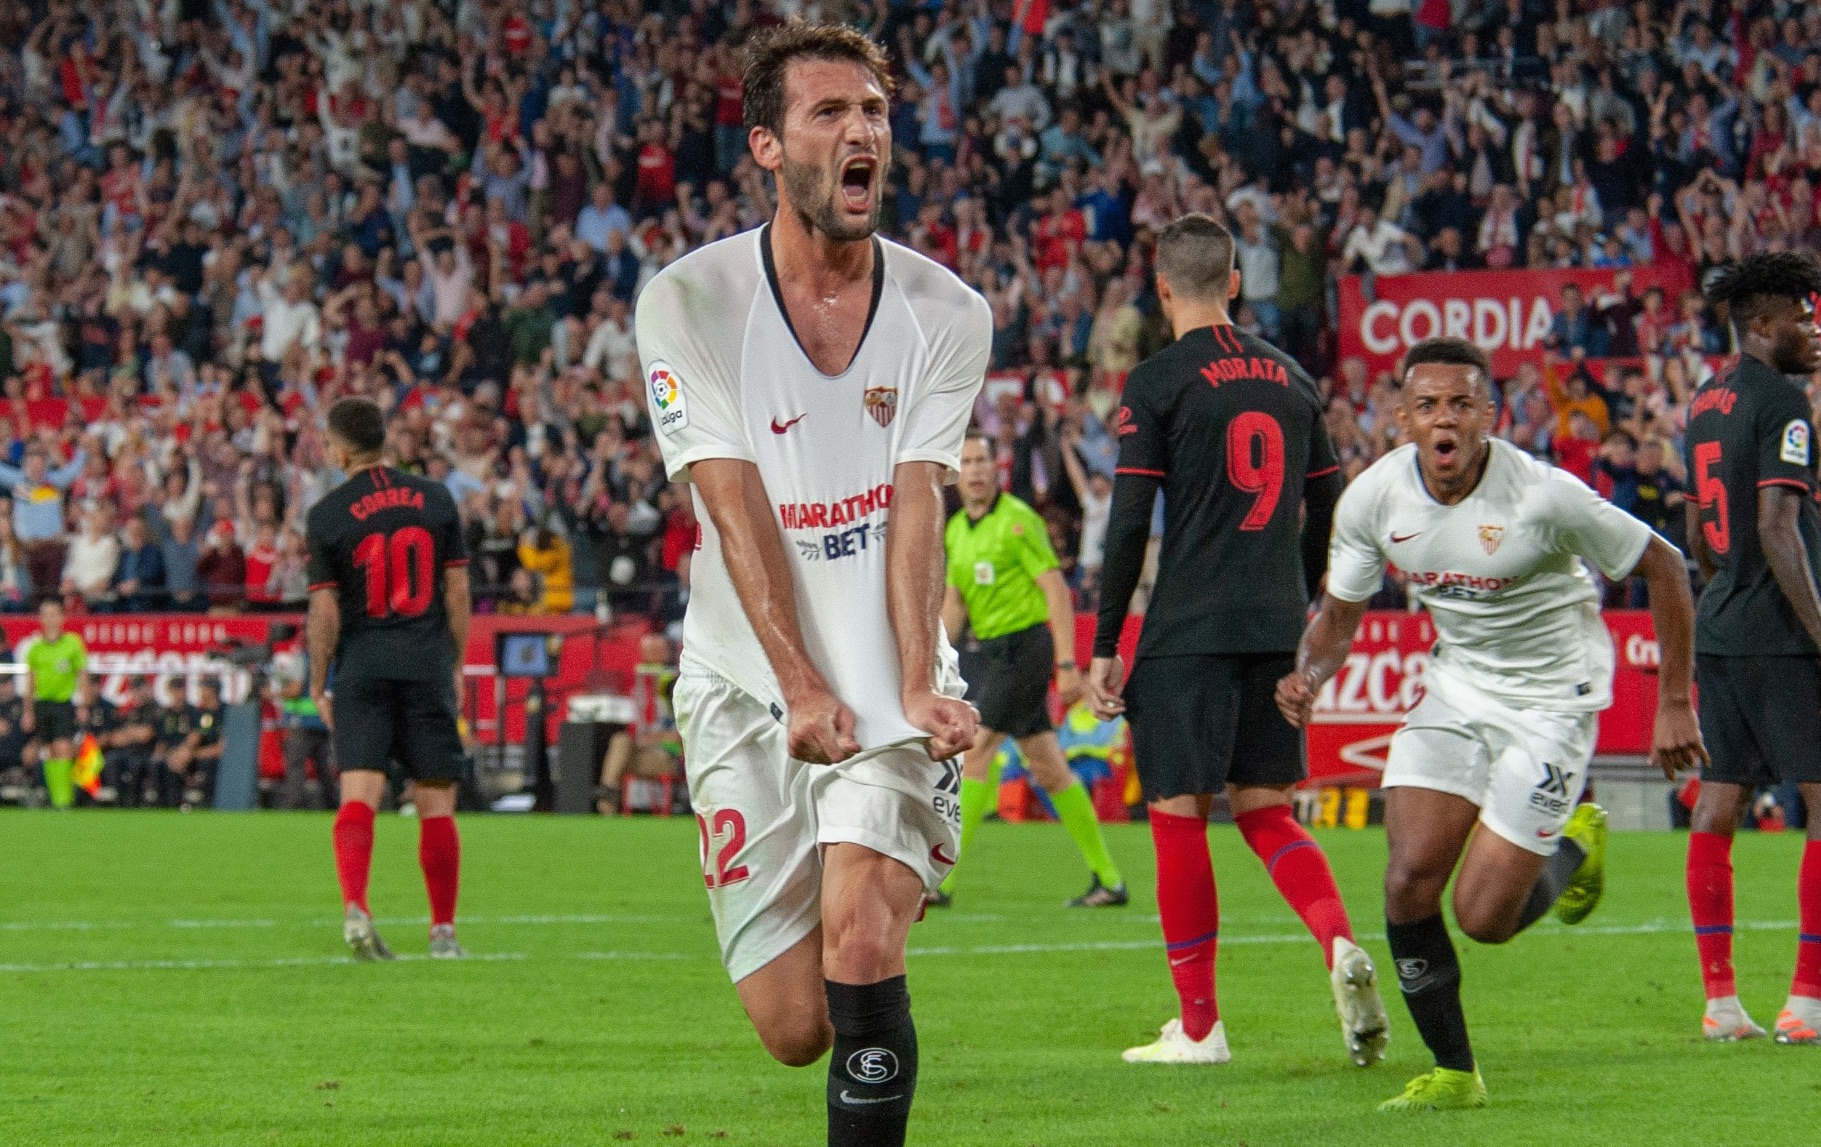 Franco Vázquez celebrates his goal vs Atlético